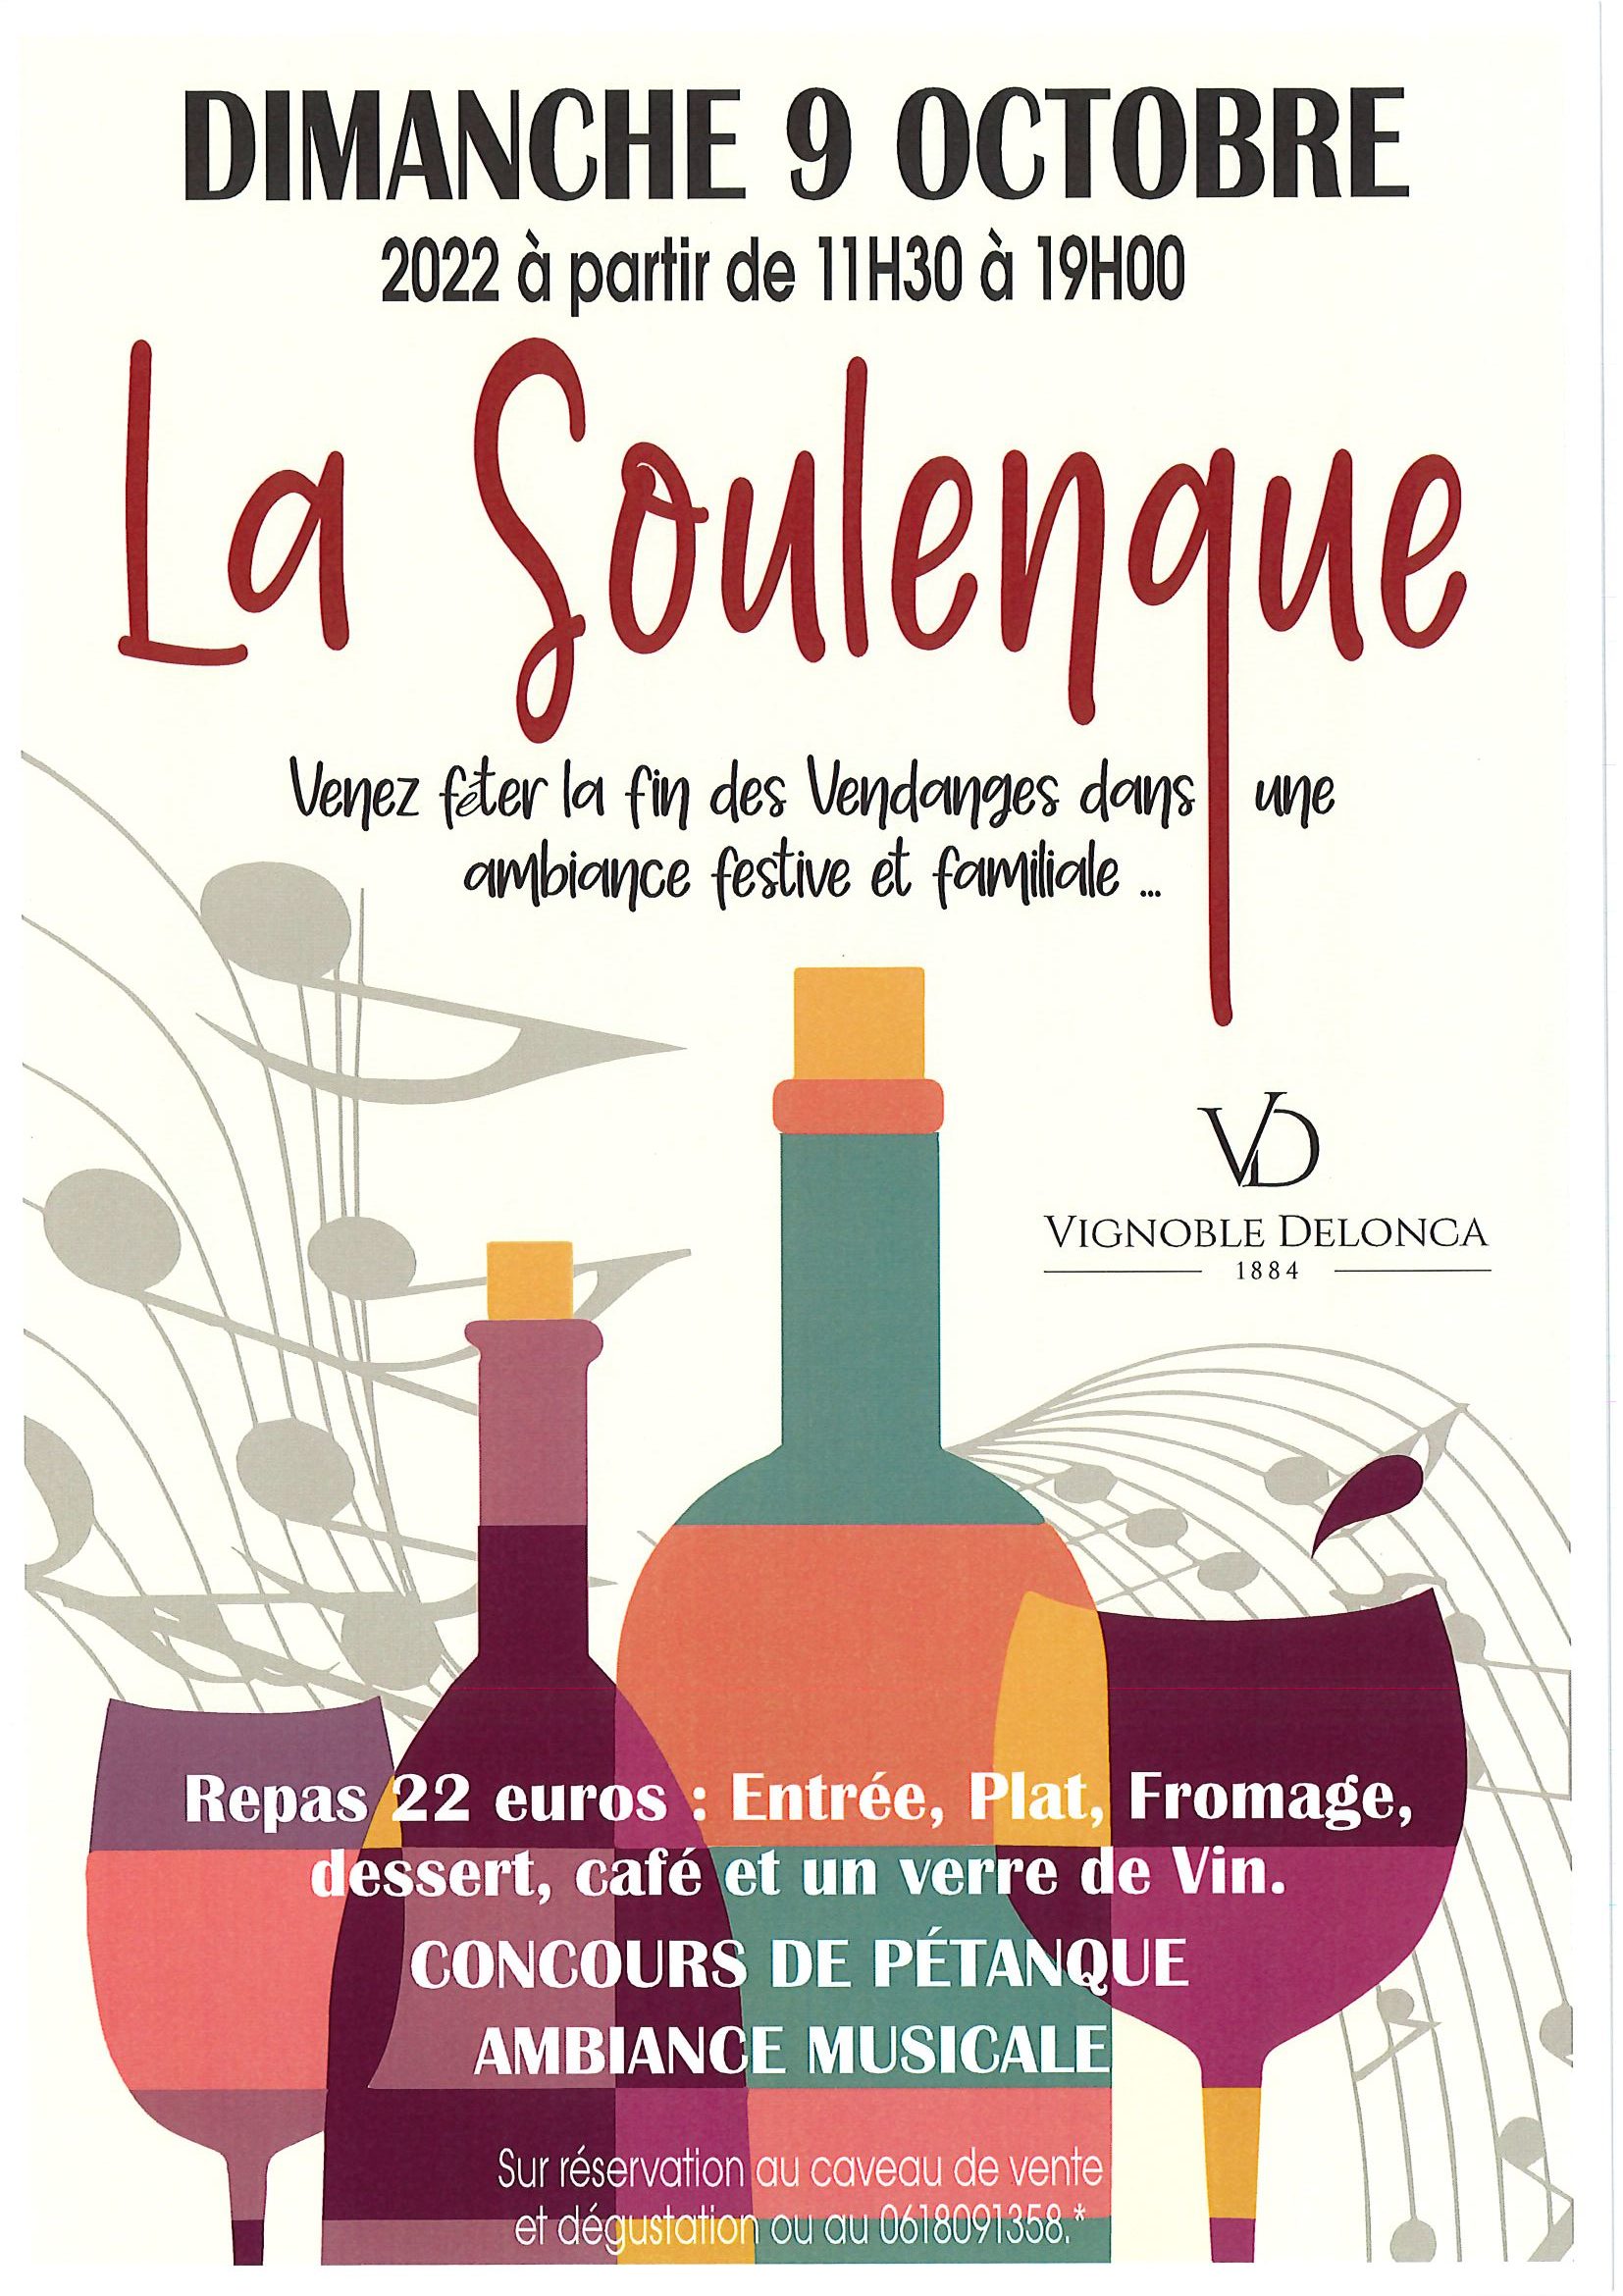 You are currently viewing La Soulenque au vignoble Delonca : dimanche 9 octobre